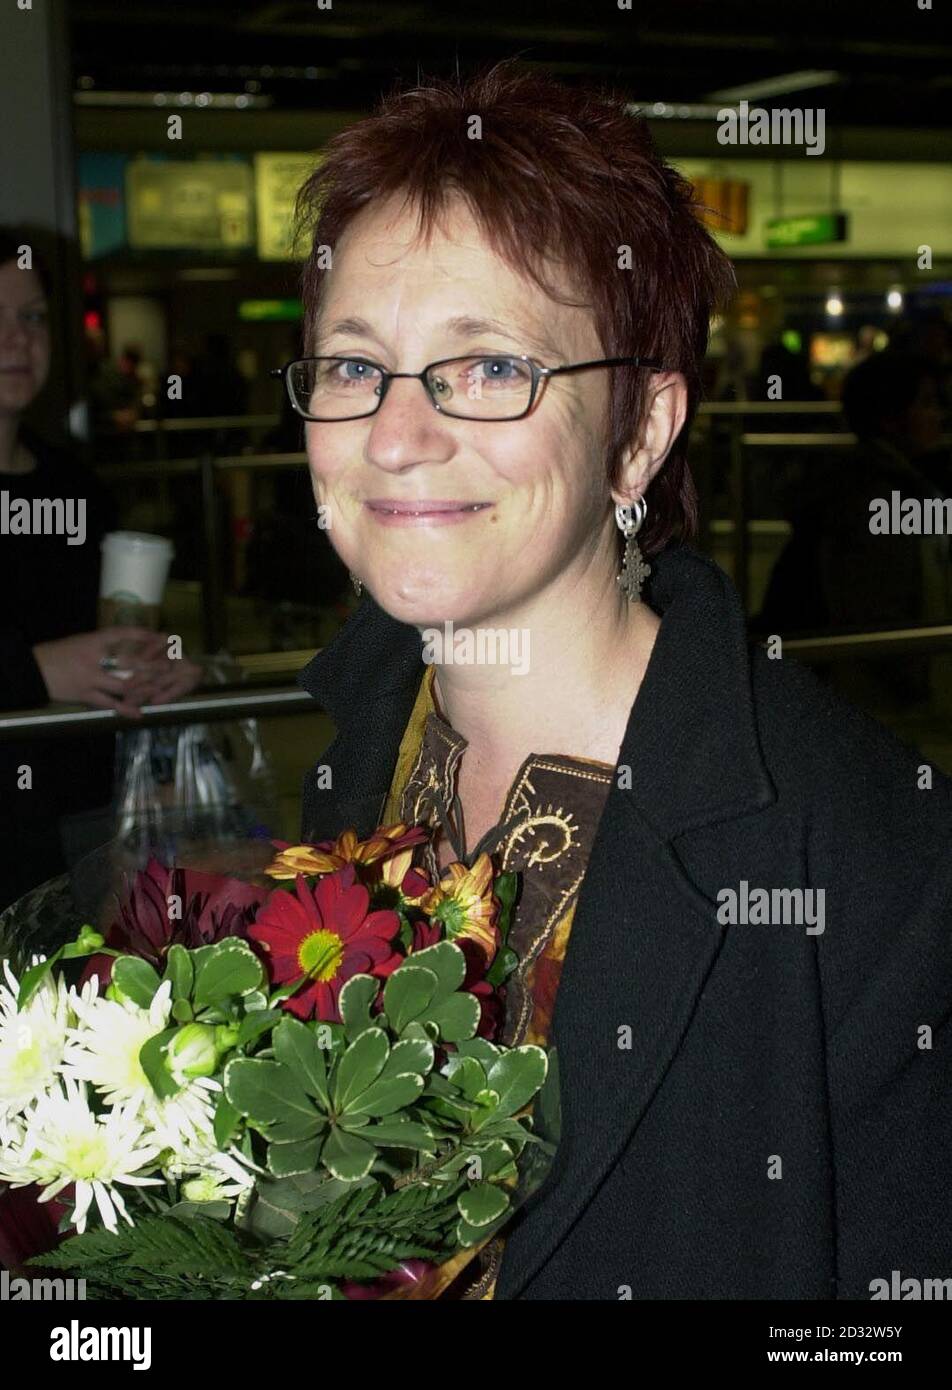 Lesley McCulloch, 40, da Dunoon in Argyll, a Heathrow. È stata rilasciata domenica dopo essere stata condannata per violazioni dei visti da un tribunale di banda Aceh il 30 dicembre, insieme con l'infermiere americano Joy Saddler. La coppia, arrestata per sospetto di spionaggio, *..aveva già trascorso più di tre mesi in rimando quando sono stati condannati per l'accusa minore e ordinato di servire il resto delle loro condanne. * 16/02/2003: Lesley McCulloch la cui famiglia era domenica 16 2003 febbraio, pronta a riceverla all'aeroporto dove l'hanno guardata iniziare un viaggio che si è concluso con il suo arresto sopra lo spyin Foto Stock